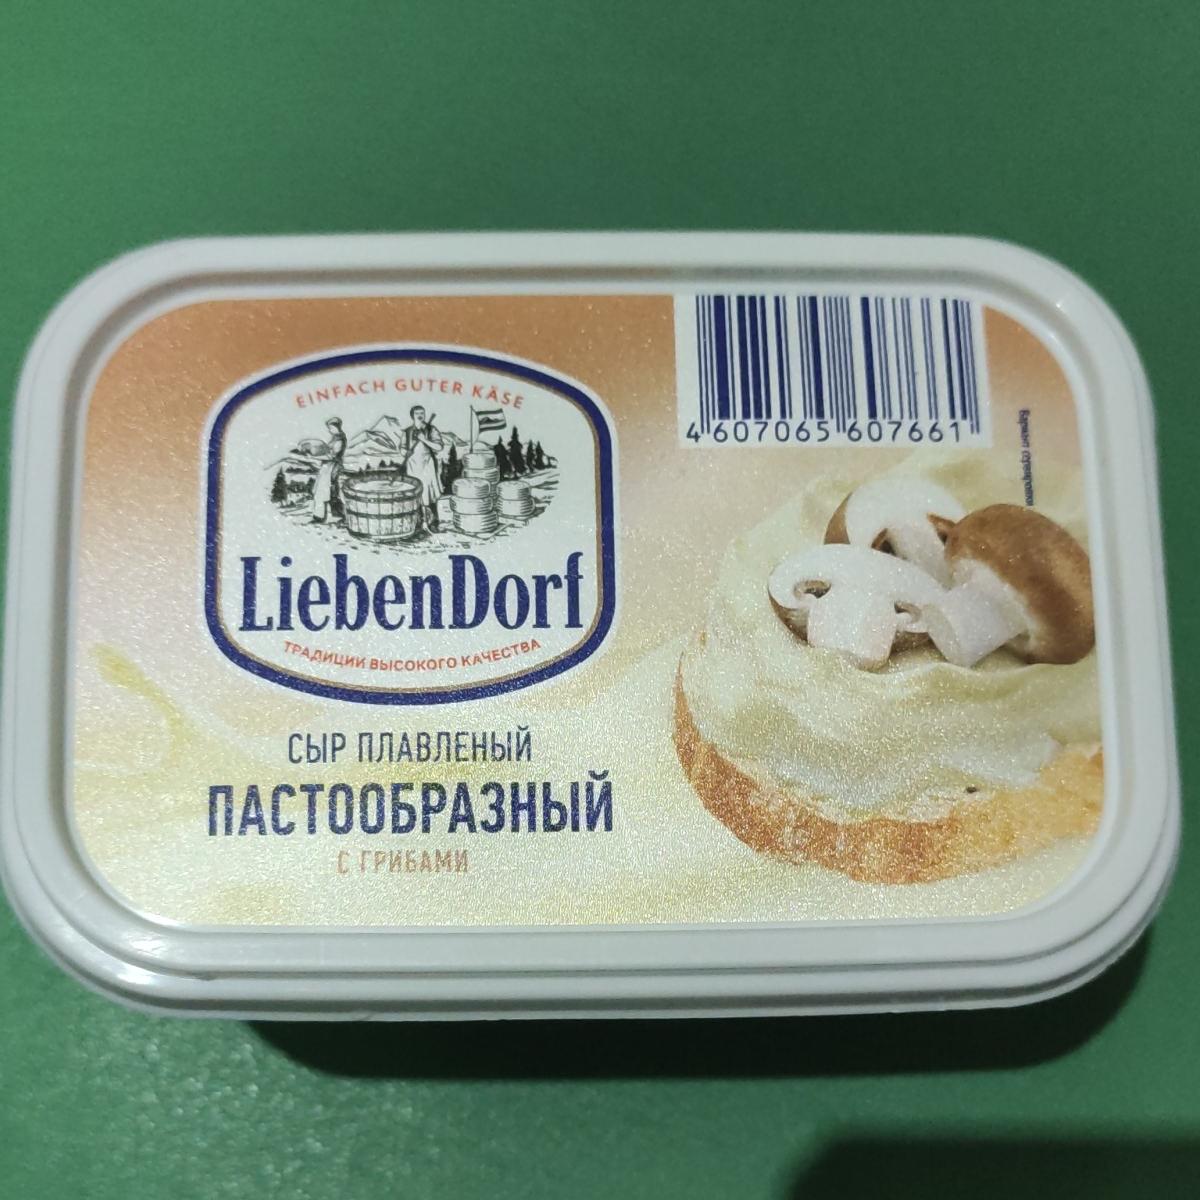 Фото - Сыр плавленый пастообразный с грибами LiebenDorf